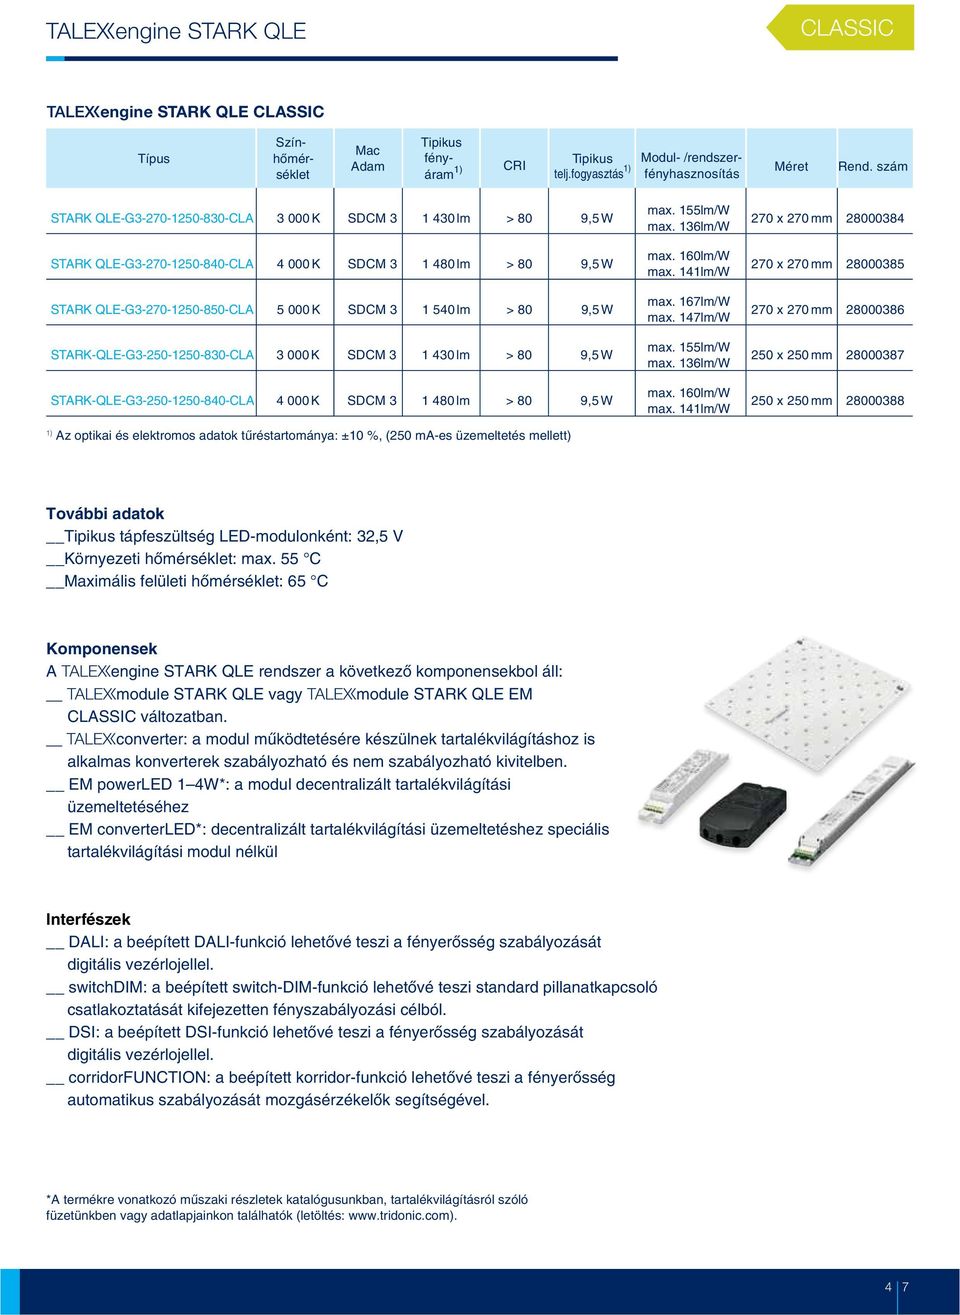 5 000K SDCM 3 1 540lm > 80 9,5W STARK-QLE-G3-250-1250-830-CLA 3 000K SDCM 3 1 430lm > 80 9,5W STARK-QLE-G3-250-1250-840-CLA 4 000K SDCM 3 1 480lm > 80 9,5W Az optikai és elektromos adatok